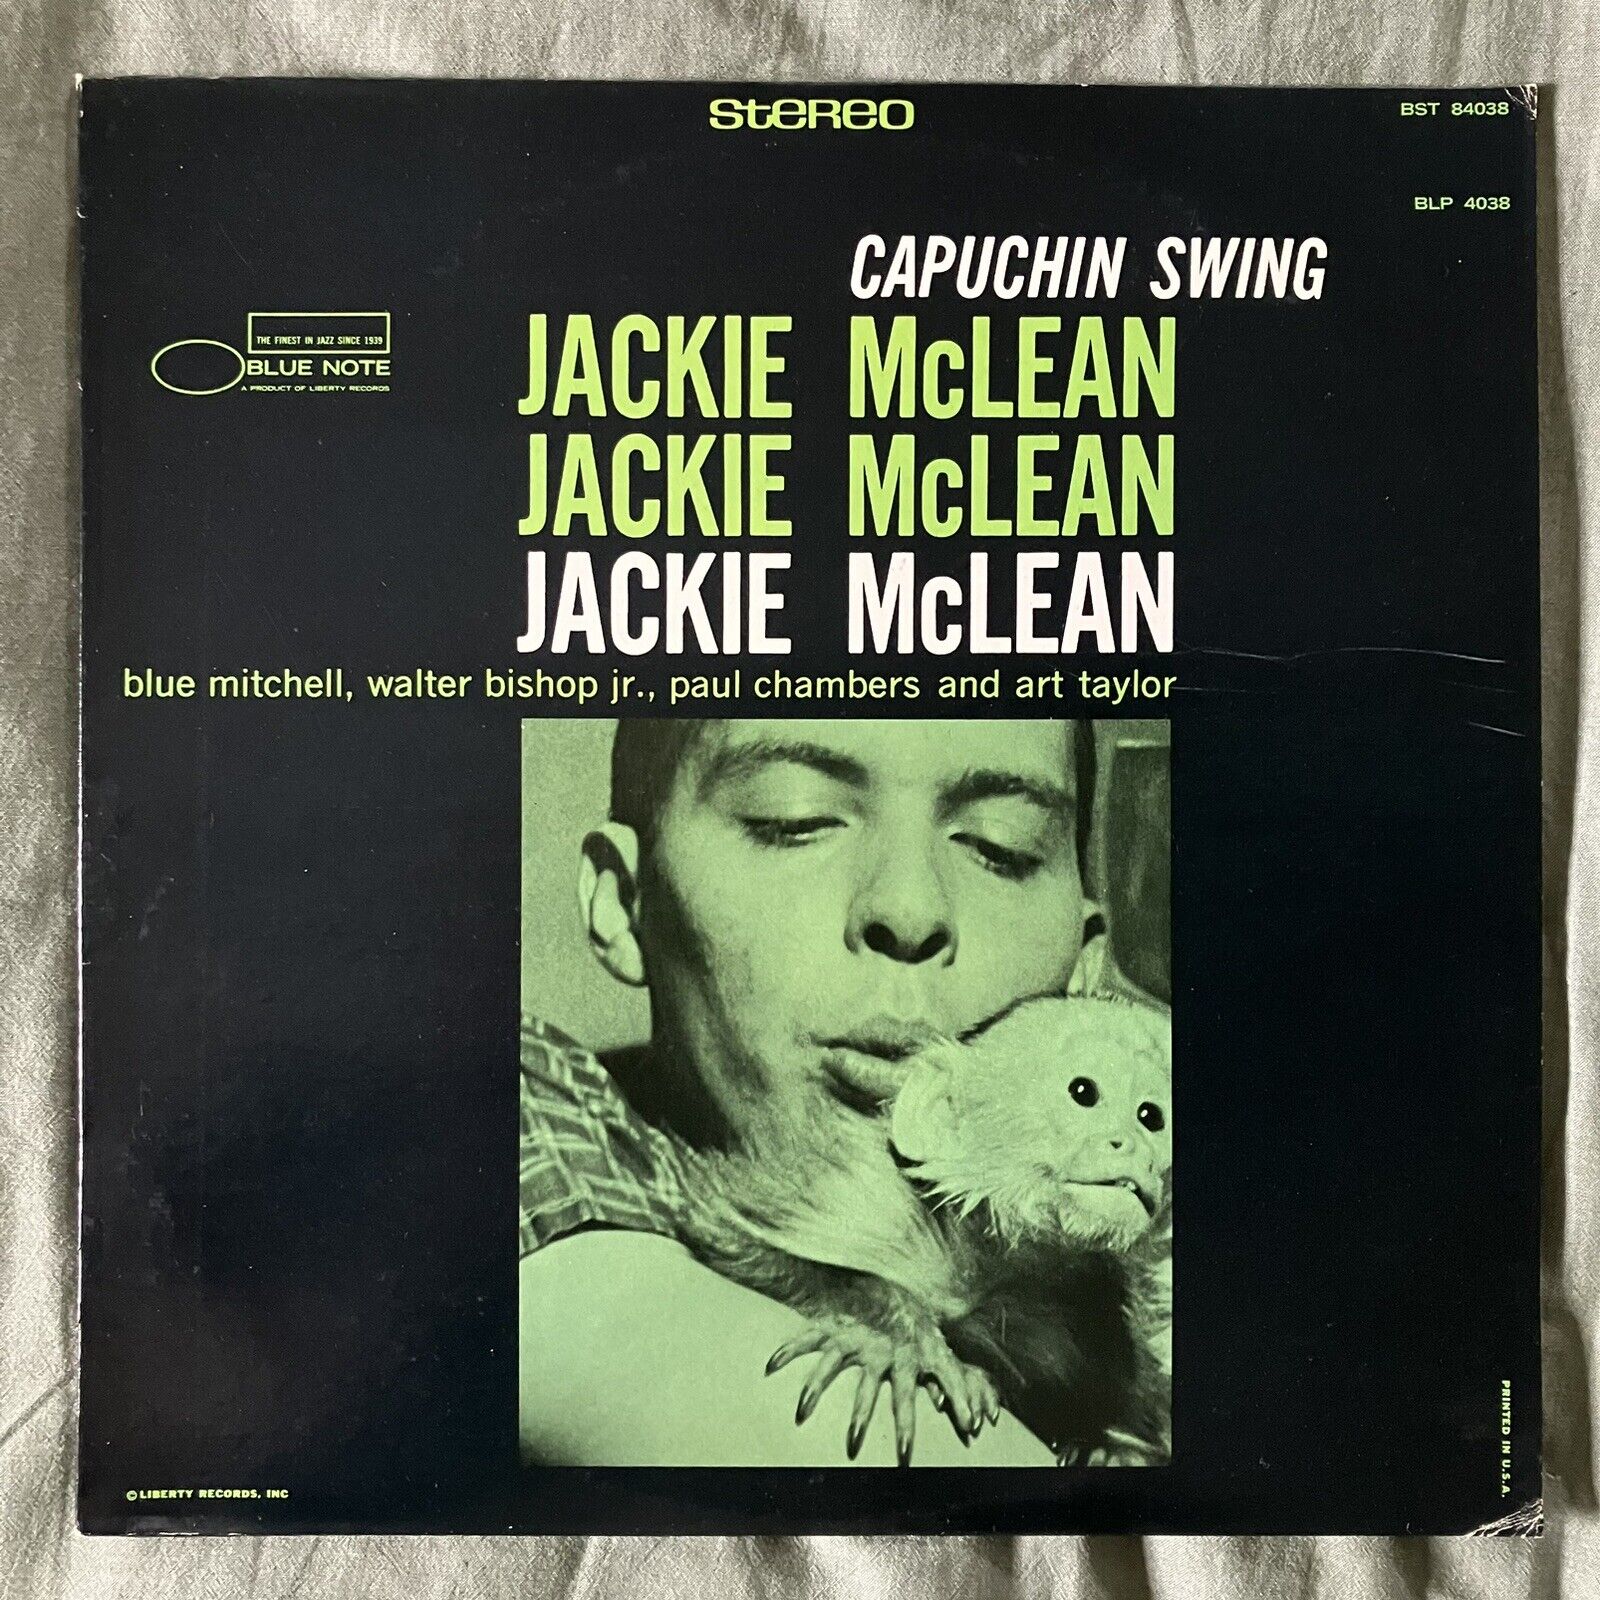 Jackie McLean Capuchin Swing 1973 Stereo Reissue Blue Note Vinyl LP